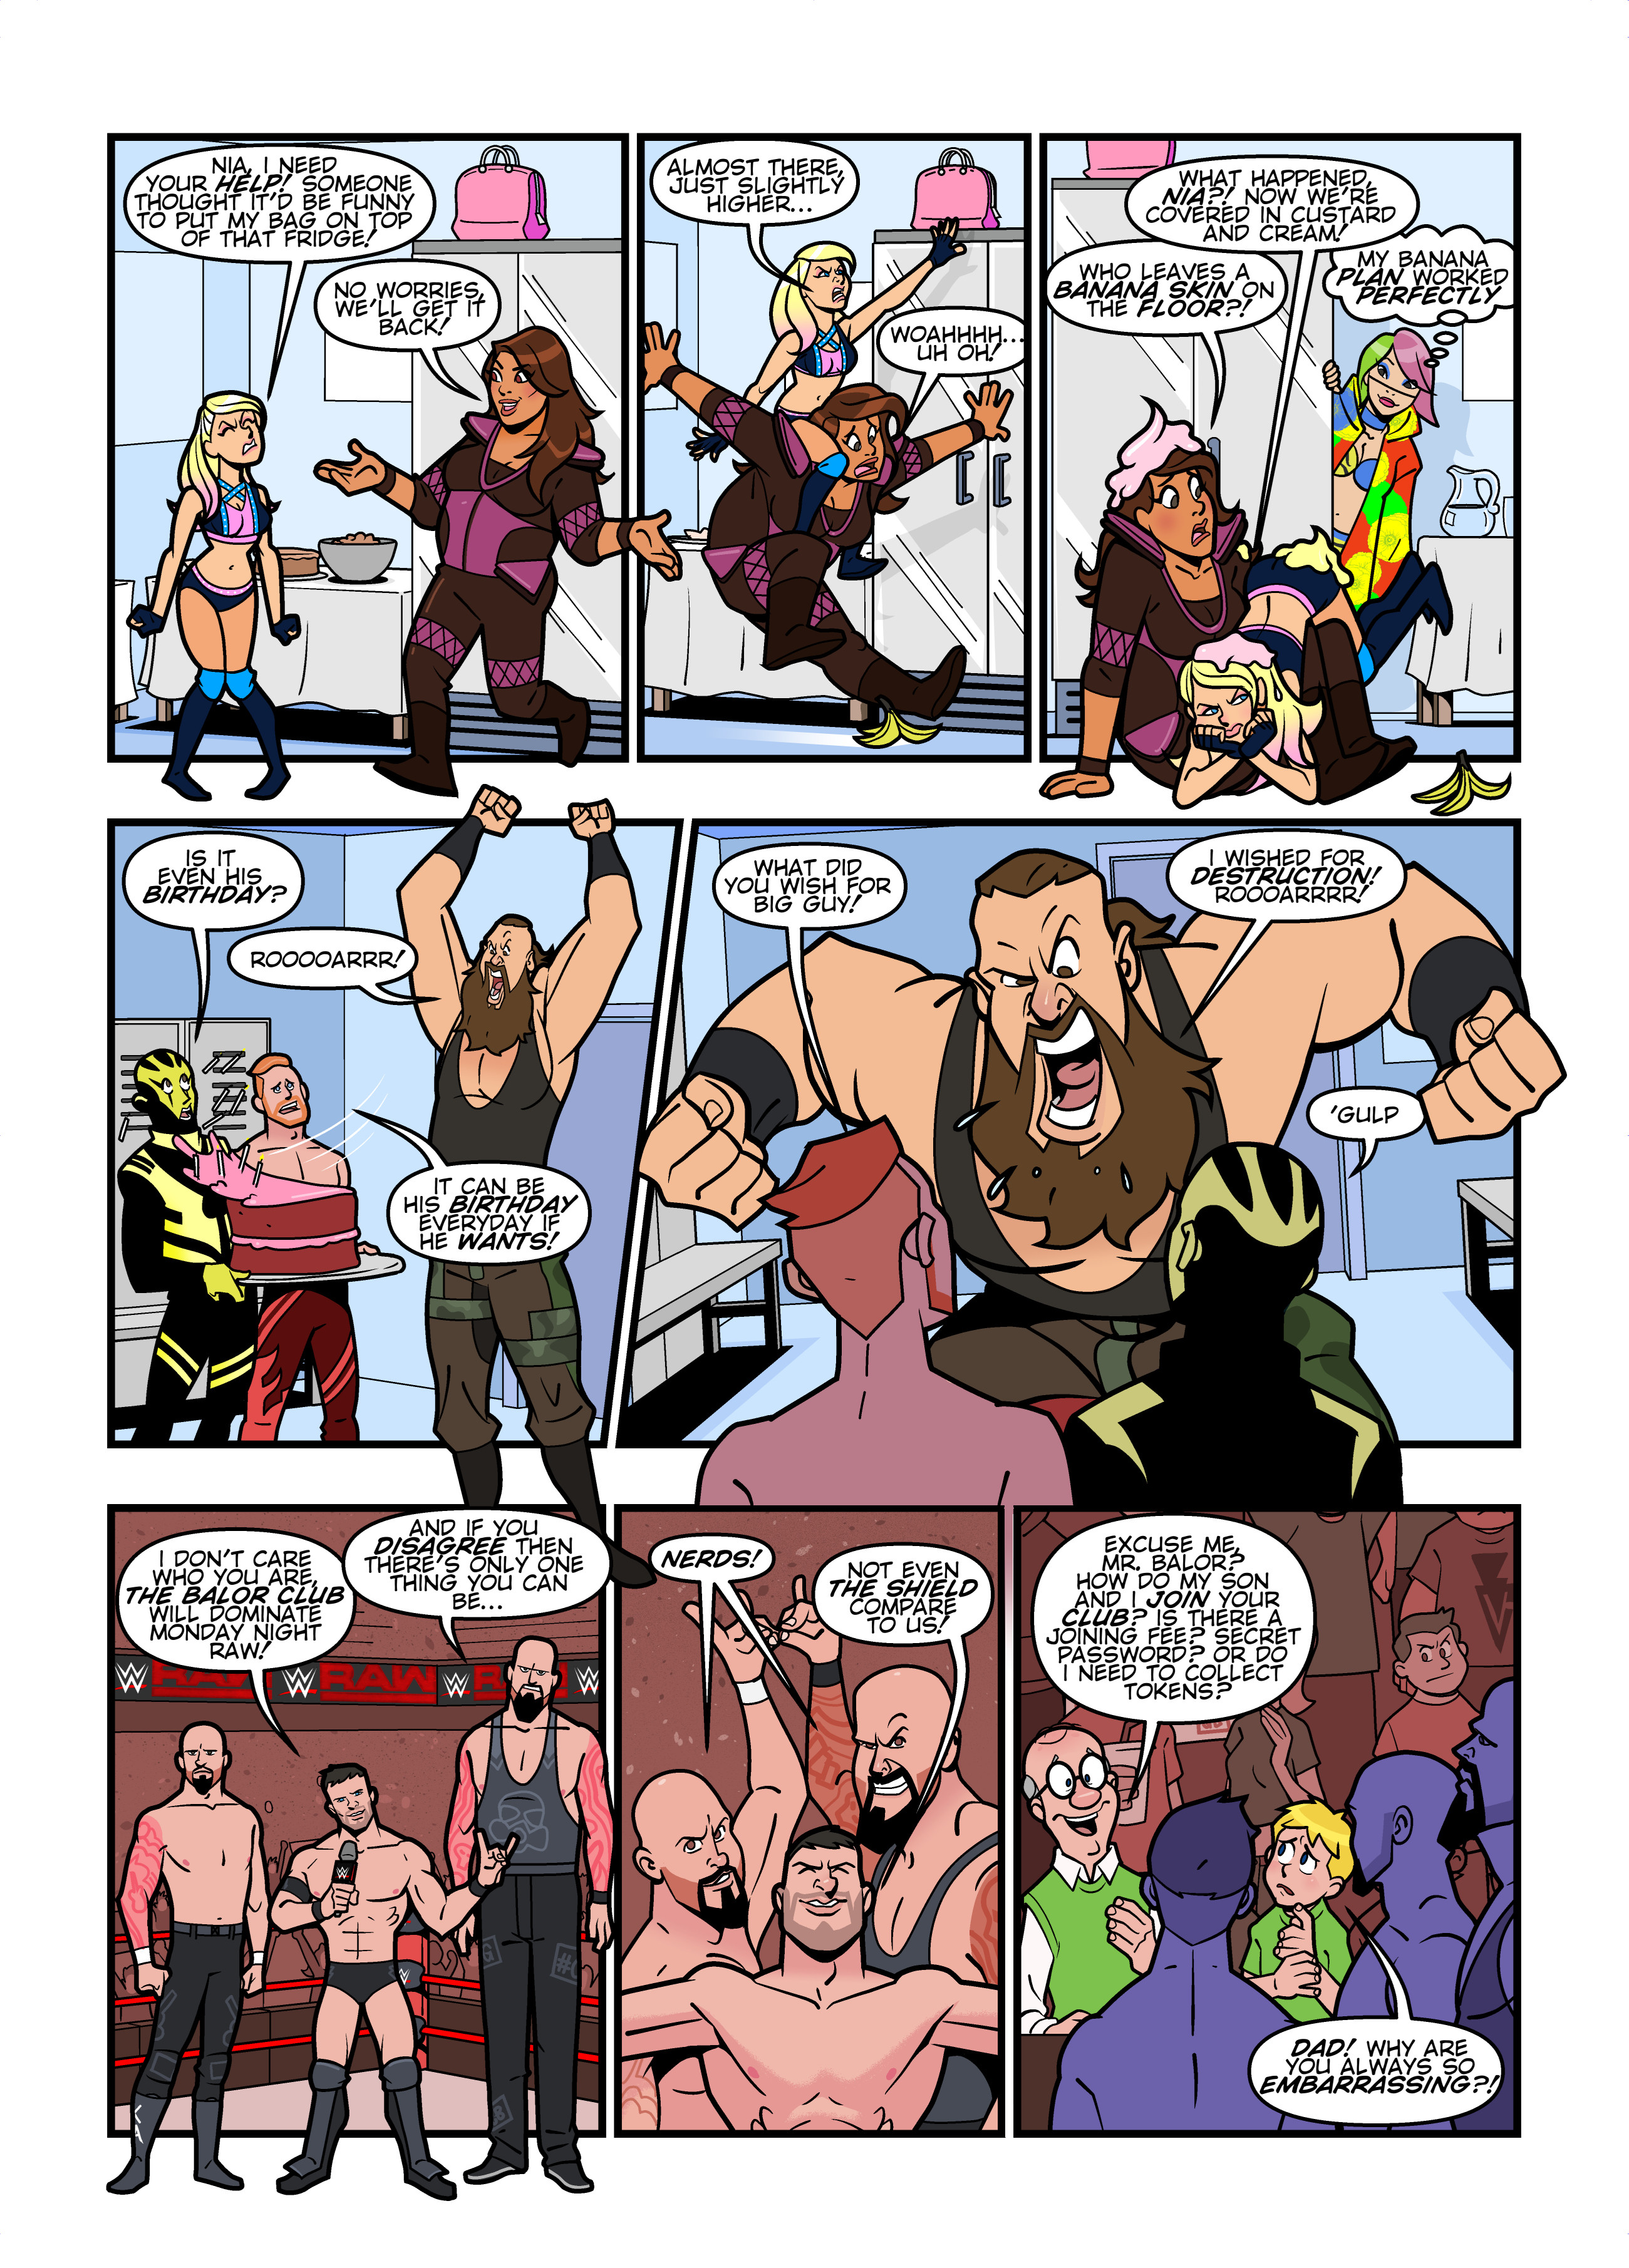 WWE RAW comic strips for WWE Kids Magazine #134